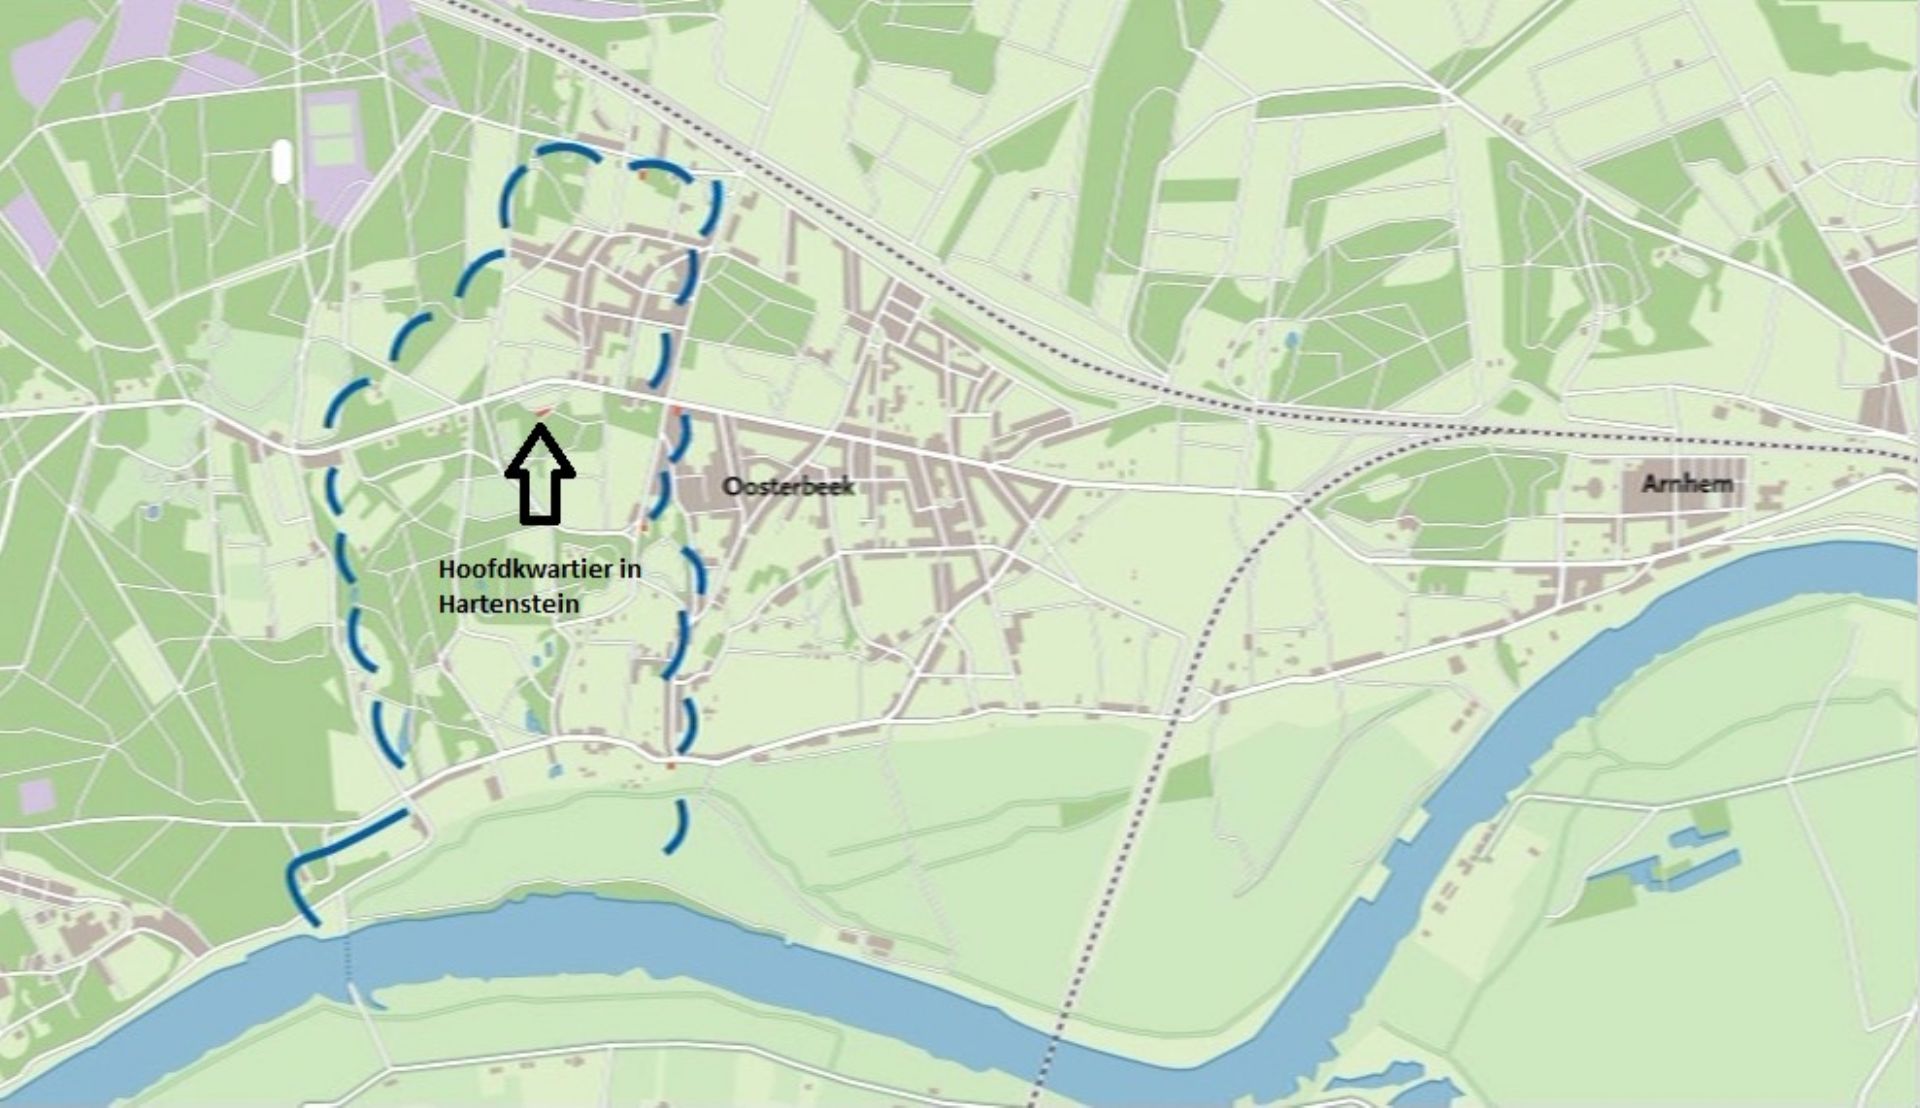 Tijdens de Slag om Arnhem zat het Britse hoofdkwartier in Oosterbeek. Toen de Britten de brug in Arnhem verloren hadden, trokken ze zich terug naar dit hoofdkwartier. In Oosterbeek ontstond de perimeter. Wat zou dat zijn?